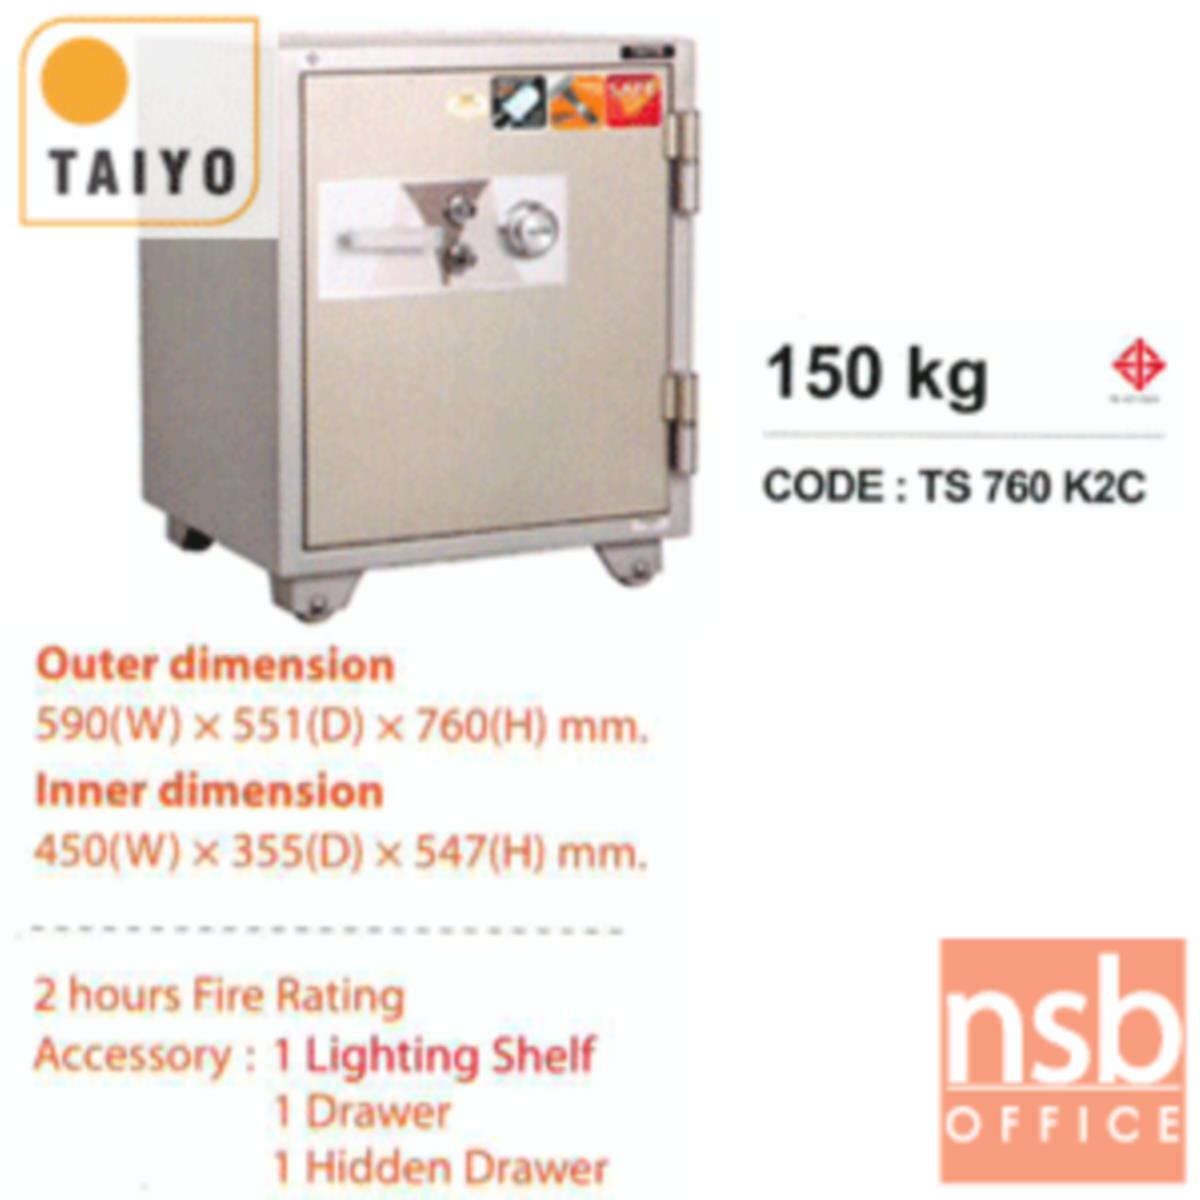 ตู้เซฟบริจาค TAIYO TS760K2C-05 มอก. 150 กก. 2 กุญแจ 1 รหัส (เจาะช่องรับบริจาค 10 cm ด้านบน)   